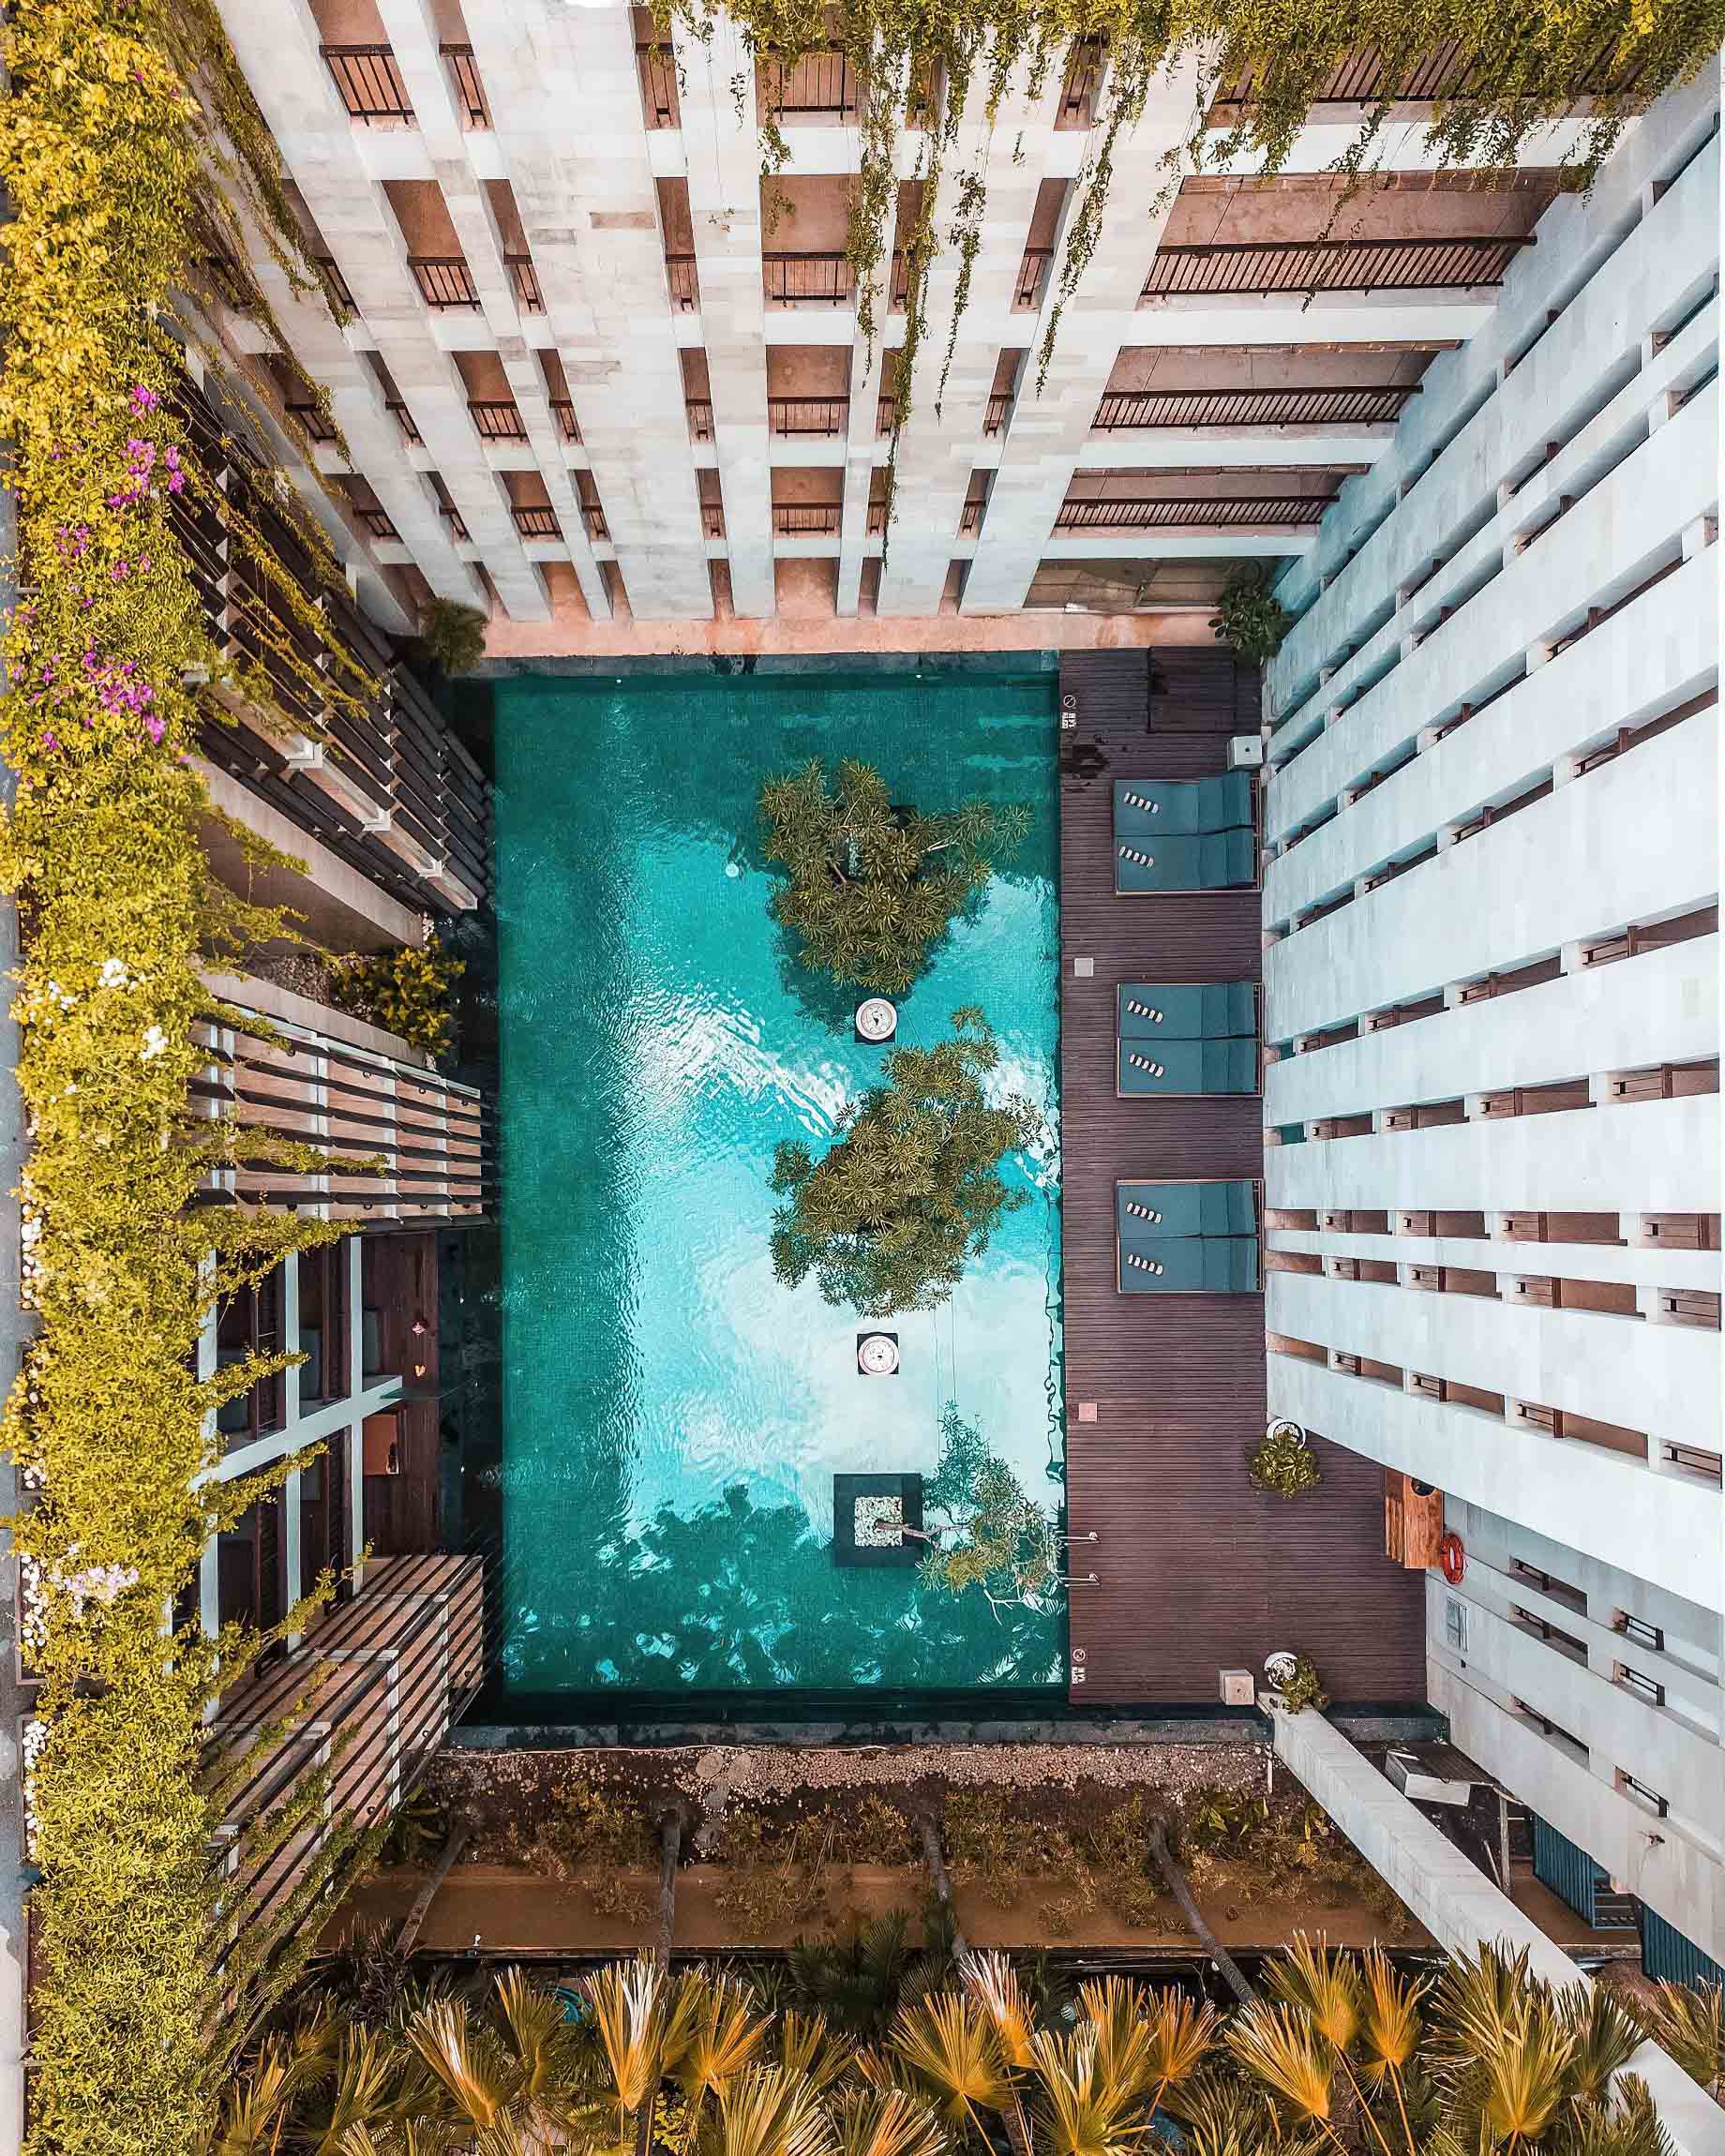 Anantara Seminyak Bali Resort – Bali, Indonesia – Courtyard Pool Aerial View